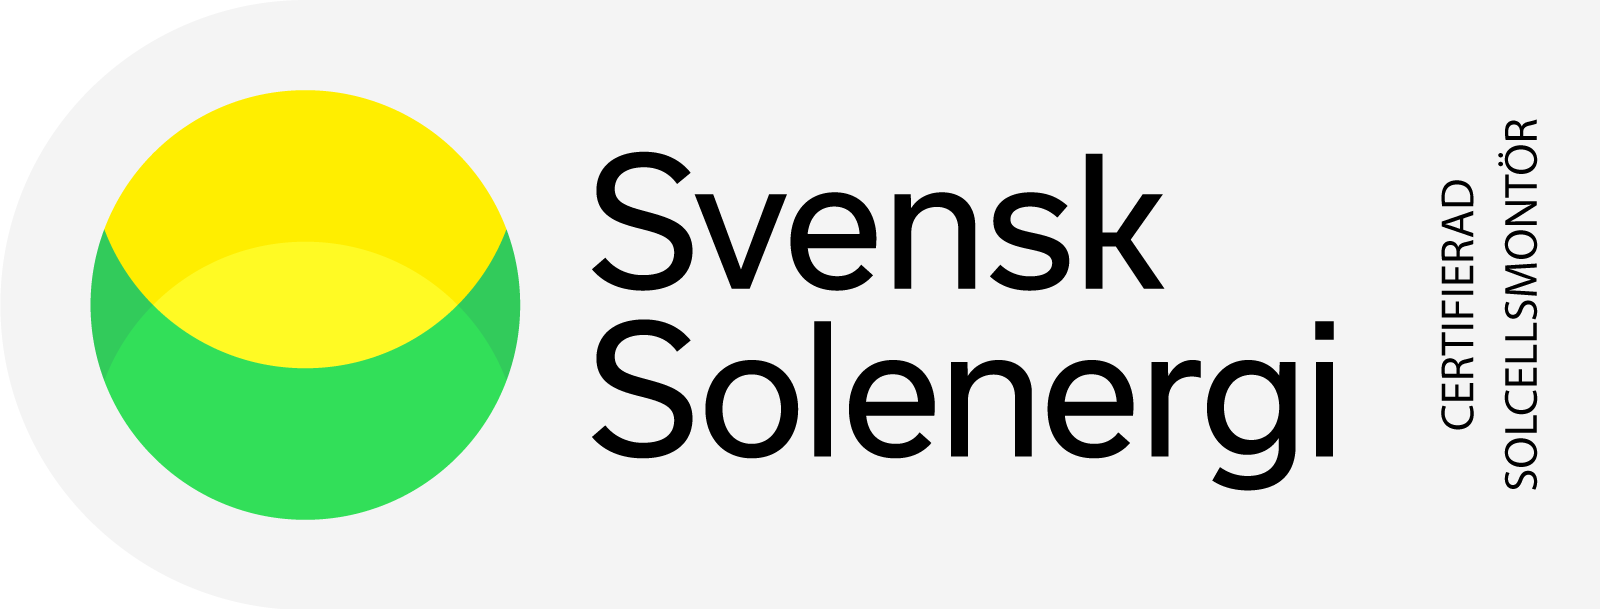 Svensk Solenergi Veosol Örebro